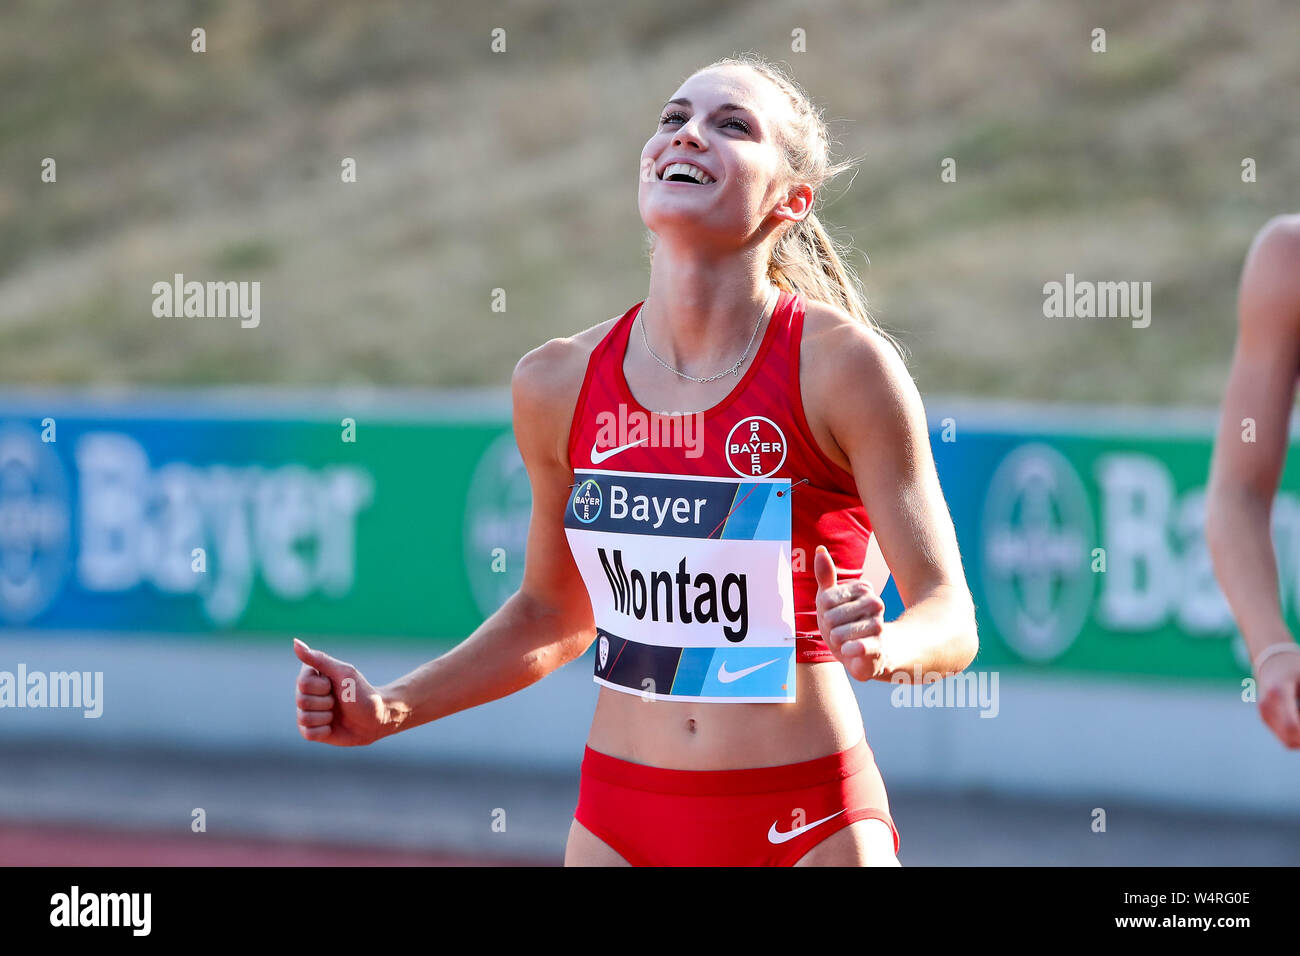 Leverkusen, Allemagne 24 Juillet 2019 : Athlétisme - Bayer Classics - 2019  Jennifer Montag (TSV Bayer 04 Leverkusen), jubilation/joie/émotion dans le  monde entier d'utilisation | Photo Stock - Alamy